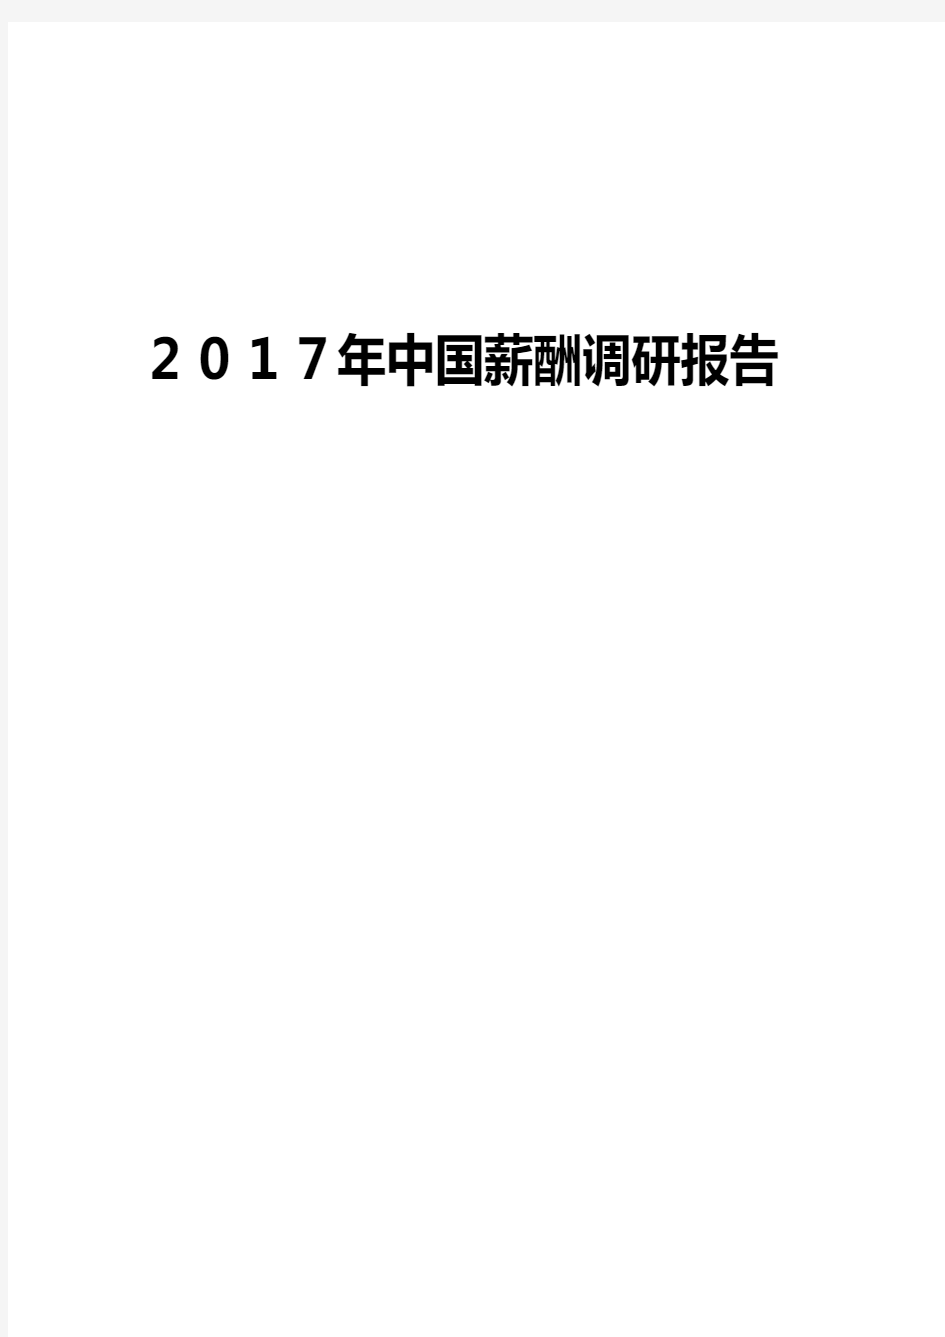 2017年中国薪酬调研报告